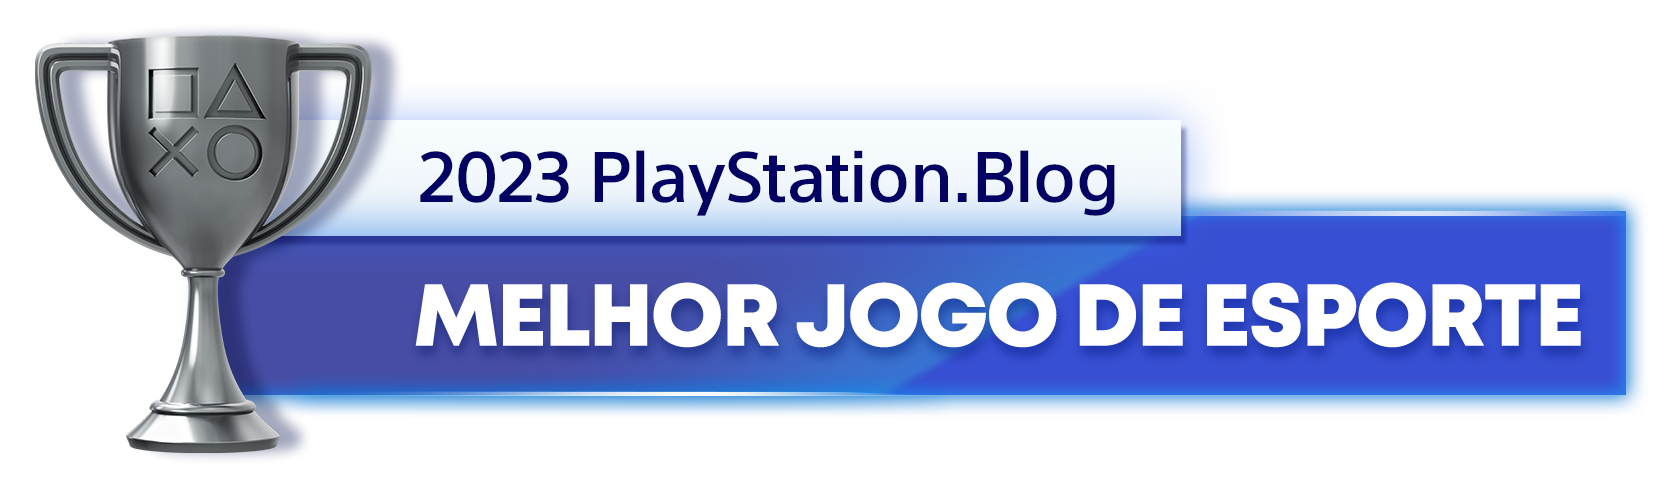  "Troféu de Prata para o vencedor da categoria Melhor Jogo de Esporte de 2023 do PlayStation Blog"